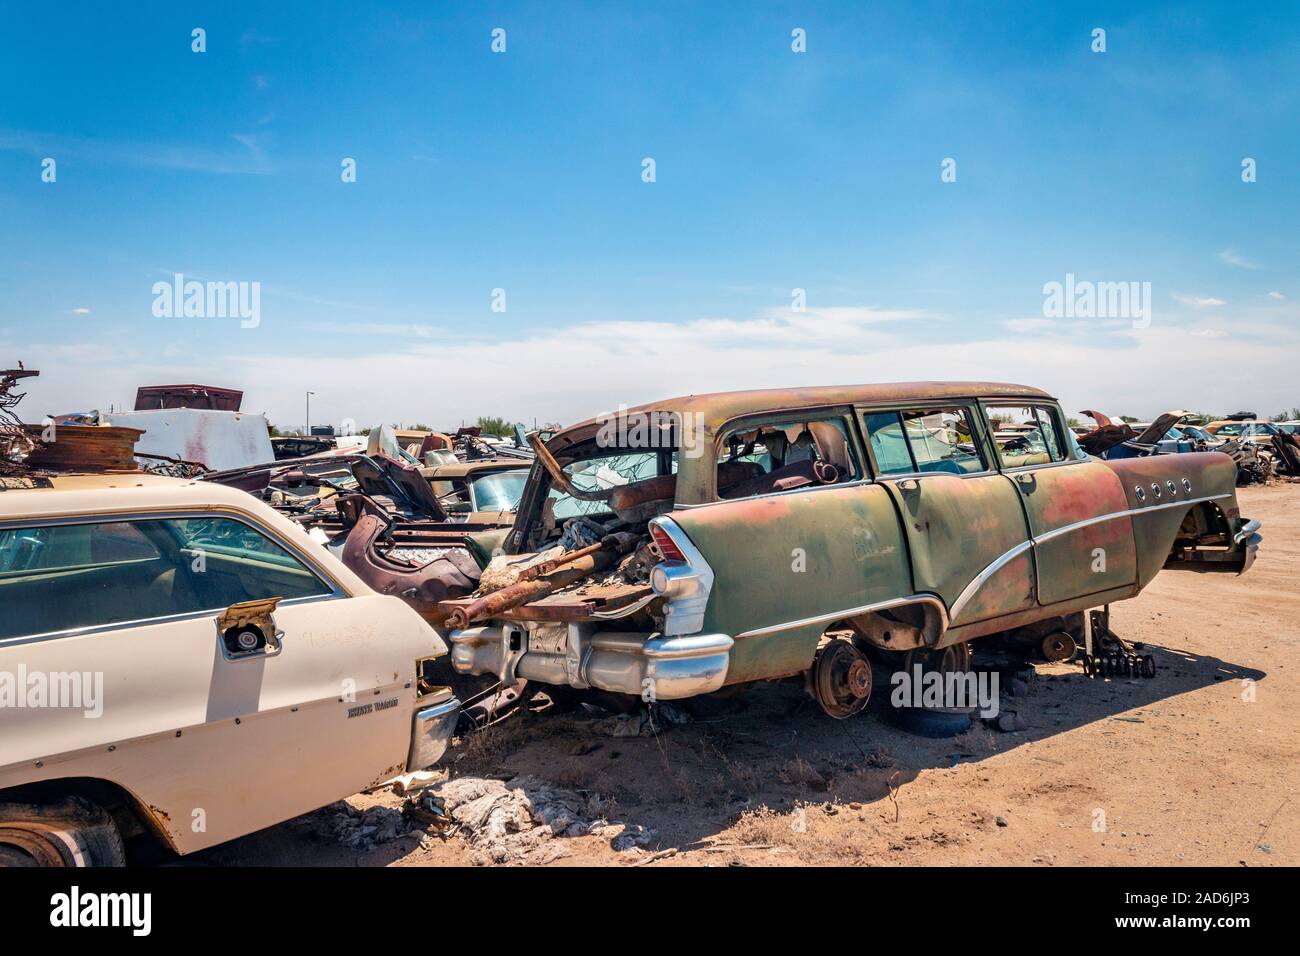 1955 buick secolo vagone arrugginito vecchie auto e camion in un cantiere di spazzatura nel deserto a Phoenix Arizona USA Foto Stock